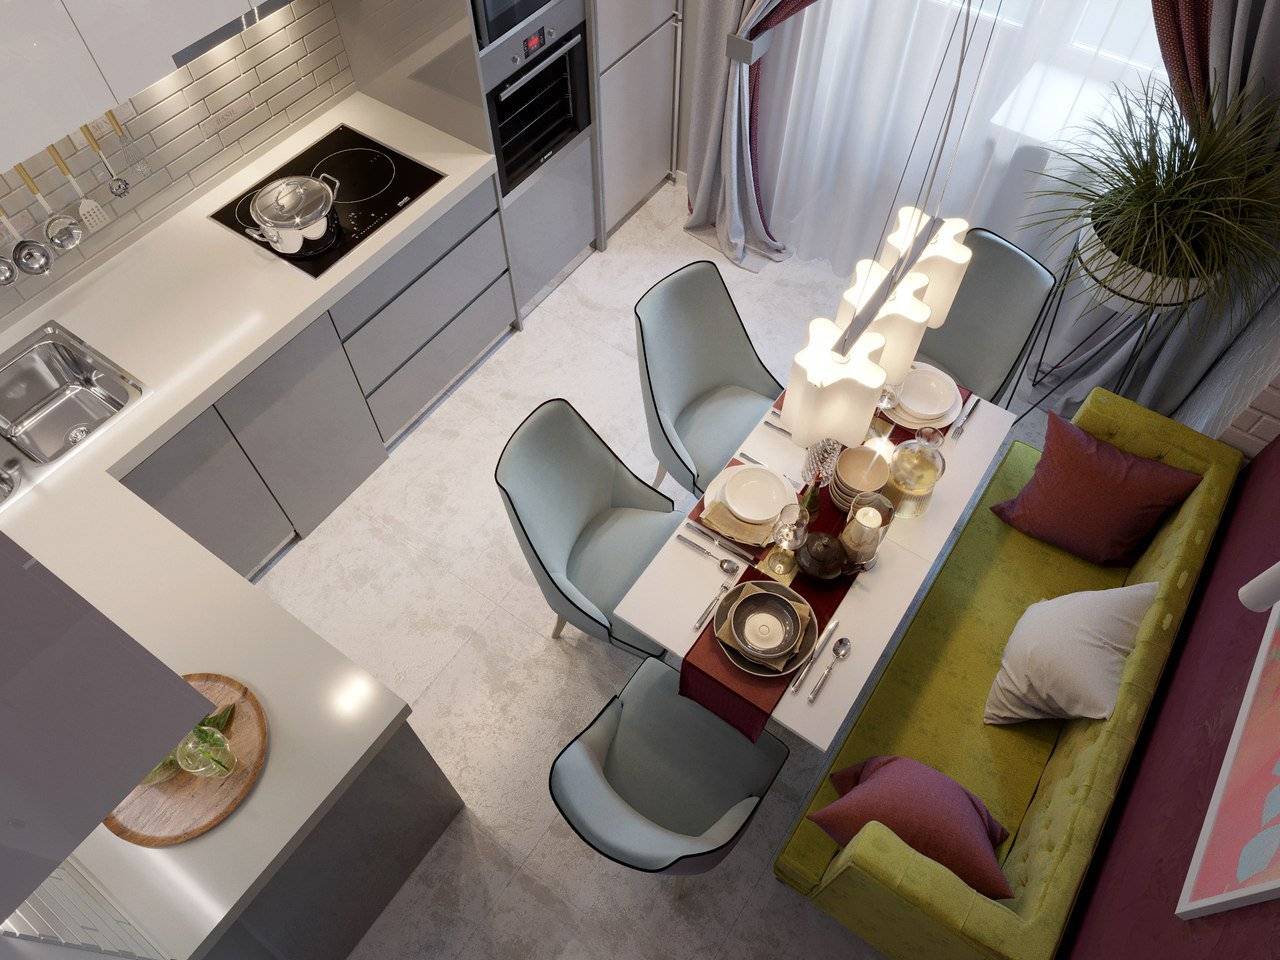 Дизайн кухни 11 кв м с диваном: как можно украсить одиннадцатиметровую кухню